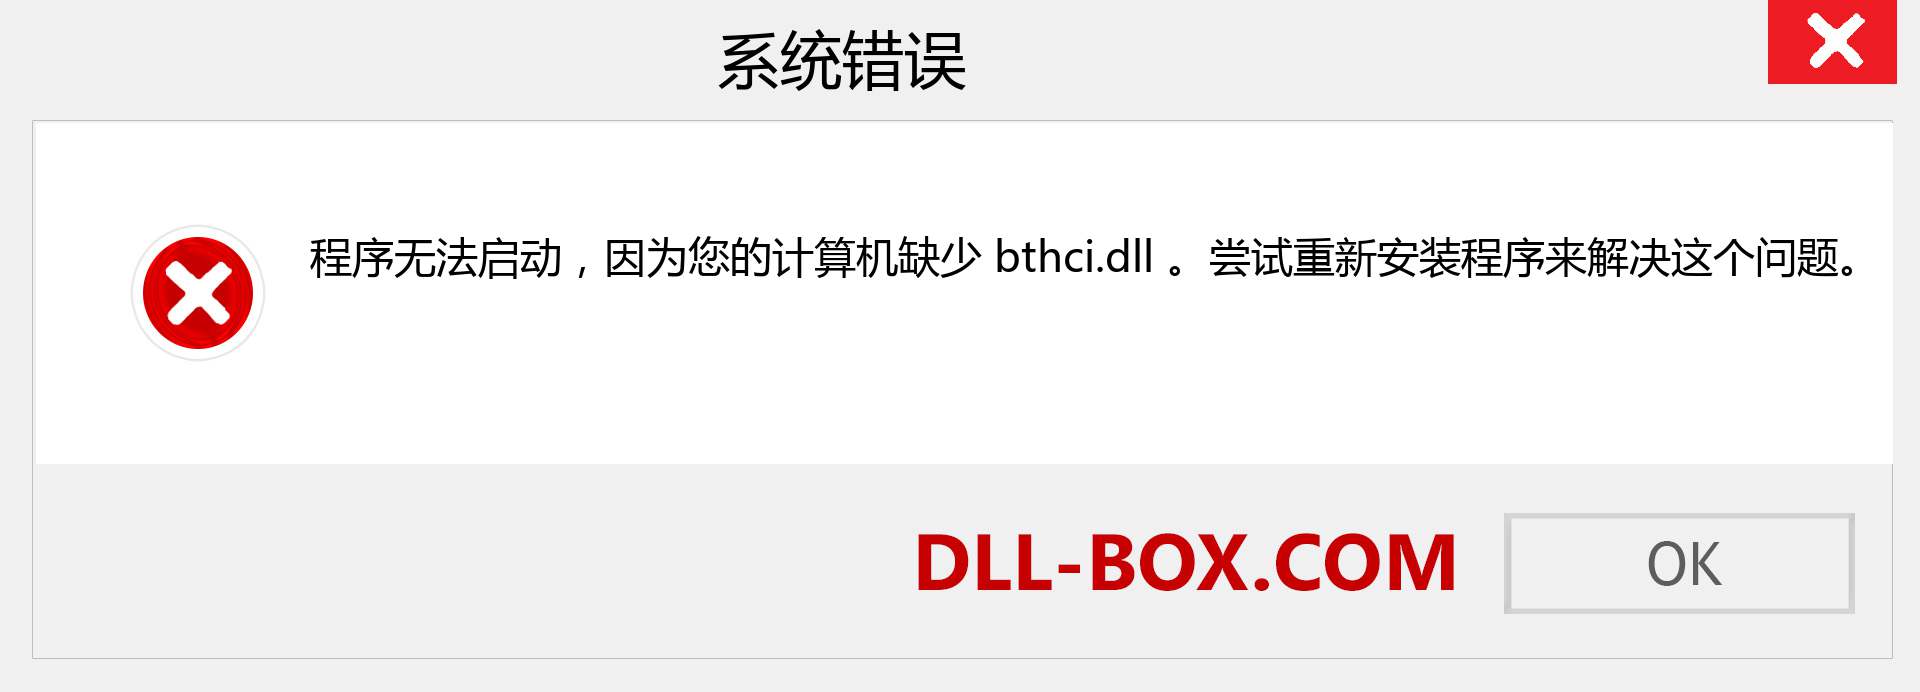 bthci.dll 文件丢失？。 适用于 Windows 7、8、10 的下载 - 修复 Windows、照片、图像上的 bthci dll 丢失错误